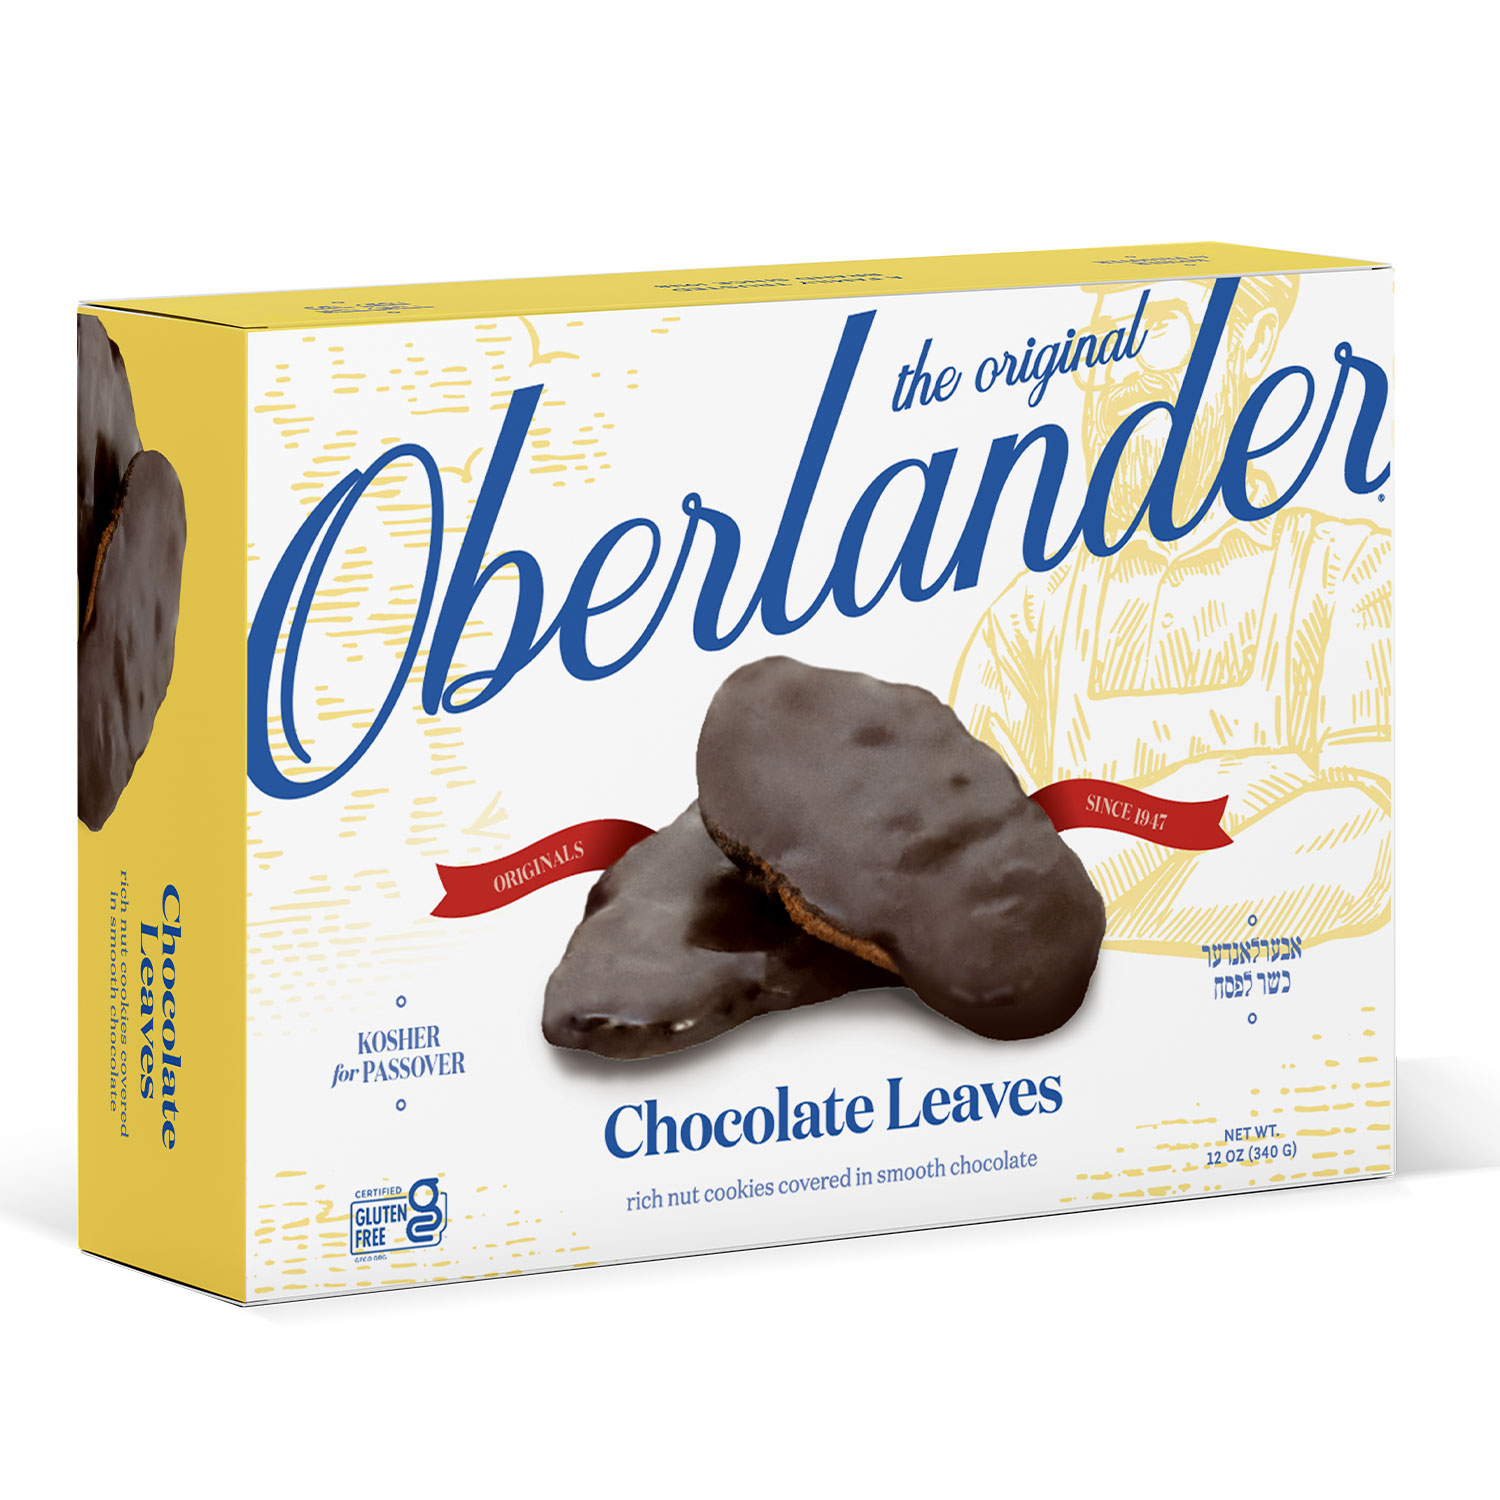 OBERLANDER CHOCOLATE LEAF COOKIES